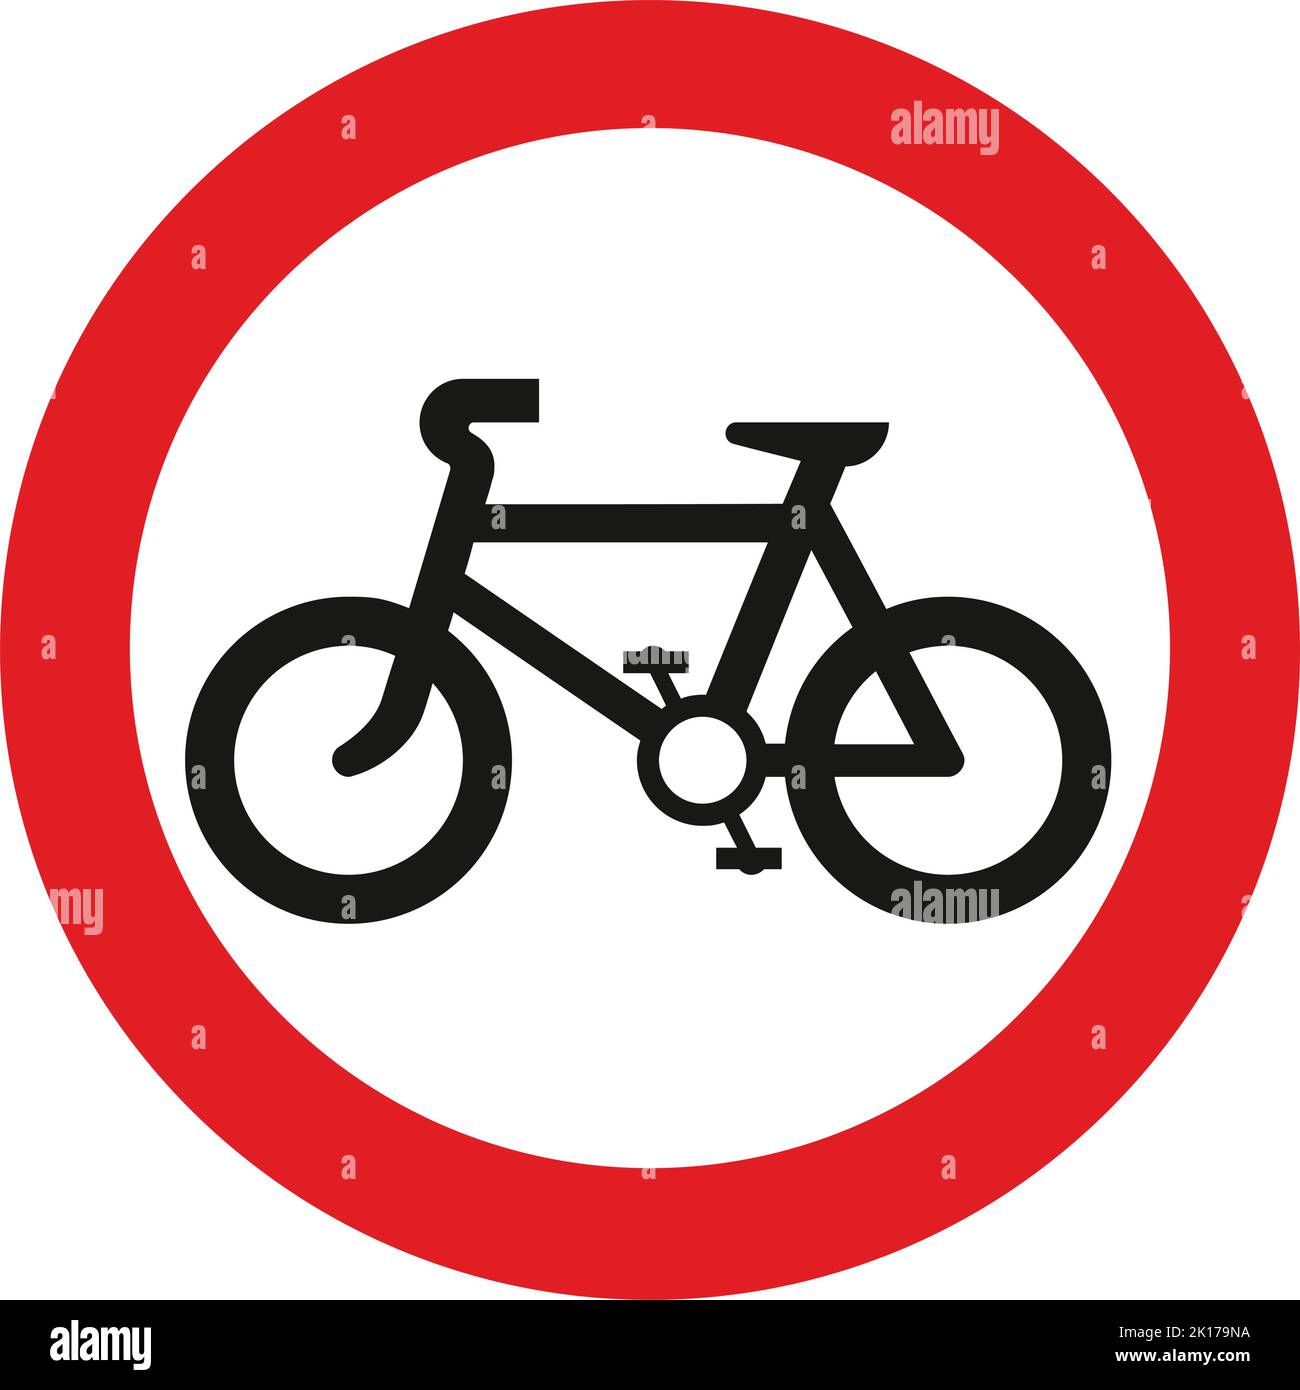 Keine Einfahrt für den Fahrzeugverkehr, das Straßenverkehrsschild, Hinweisschilder, Schilder mit roten Kreisen sind meist unerschwinglich. Platten unter Schilder Stock Vektor